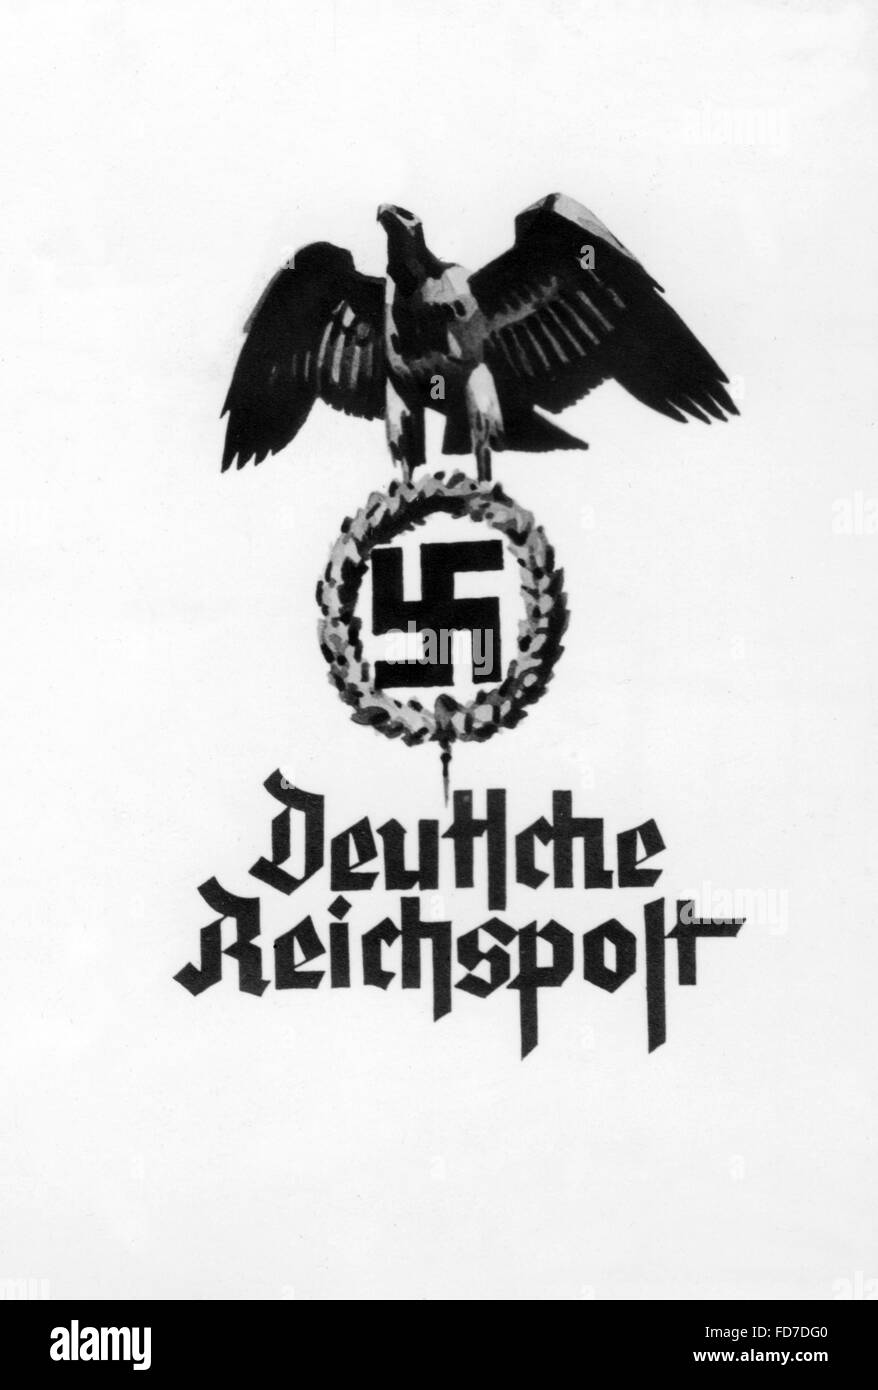 Schmuckblatttelegramm (speciale telegramma) della Reichspost, 1936 Foto Stock